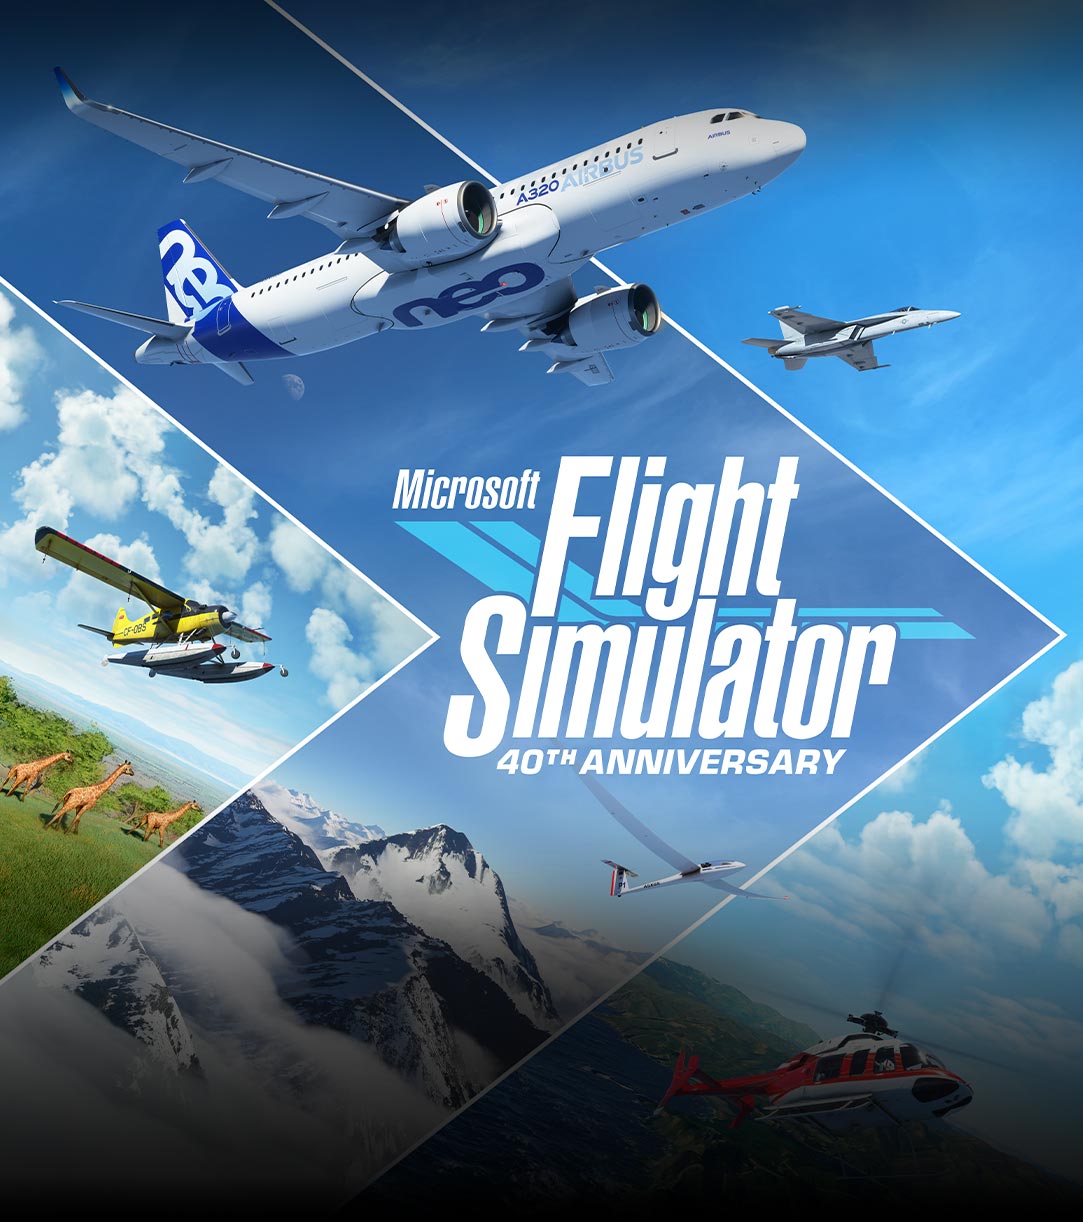 Microsoft Flight Simulator 40th Anniversary-logo, vliegtuigen en scènes uit verschillende delen van de wereld